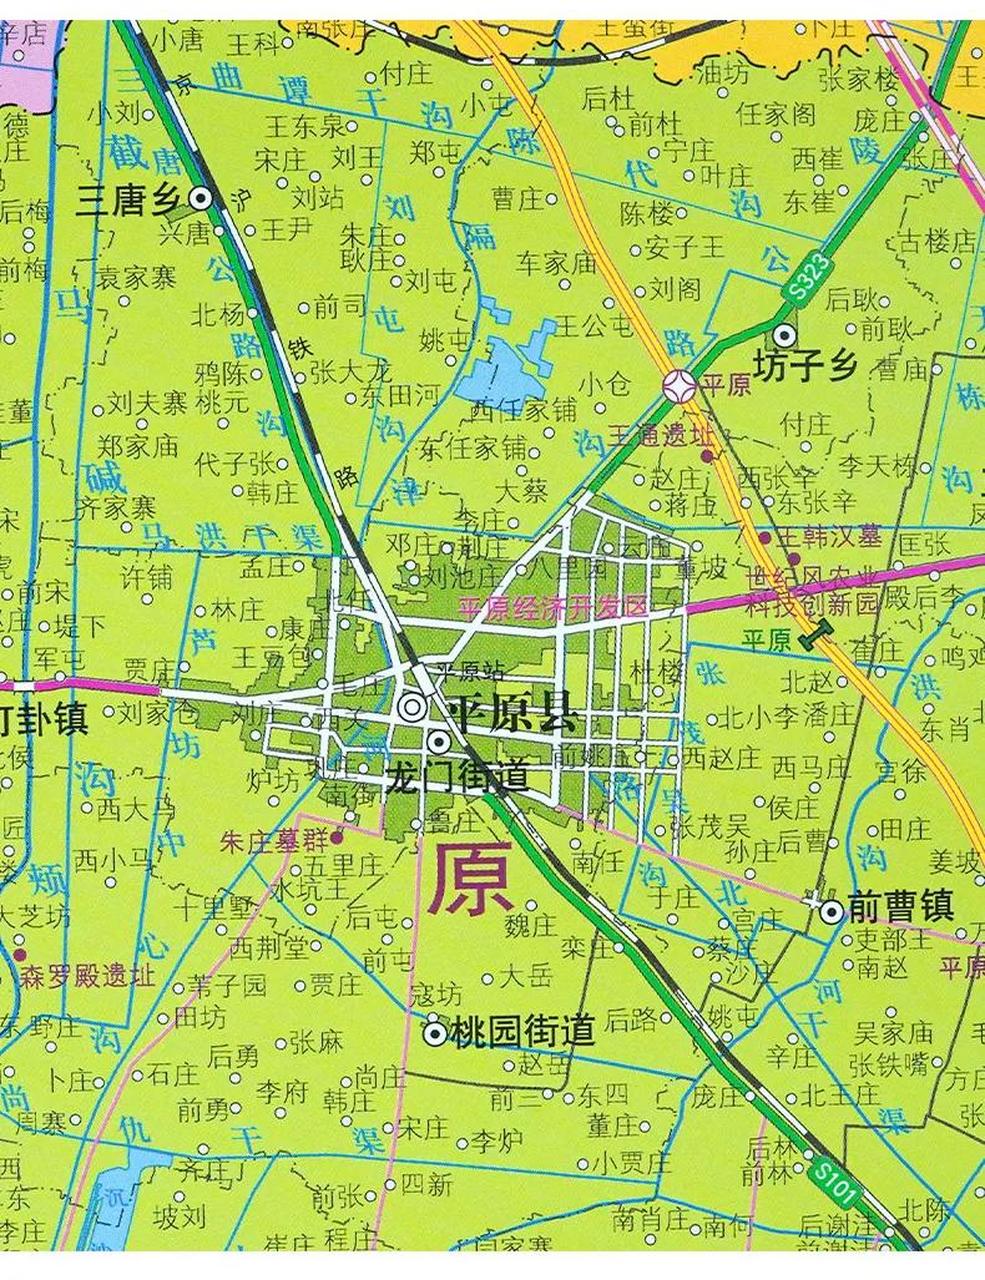 从平原县到济南约40分钟,坐高铁到北京约1小时,到上海3个